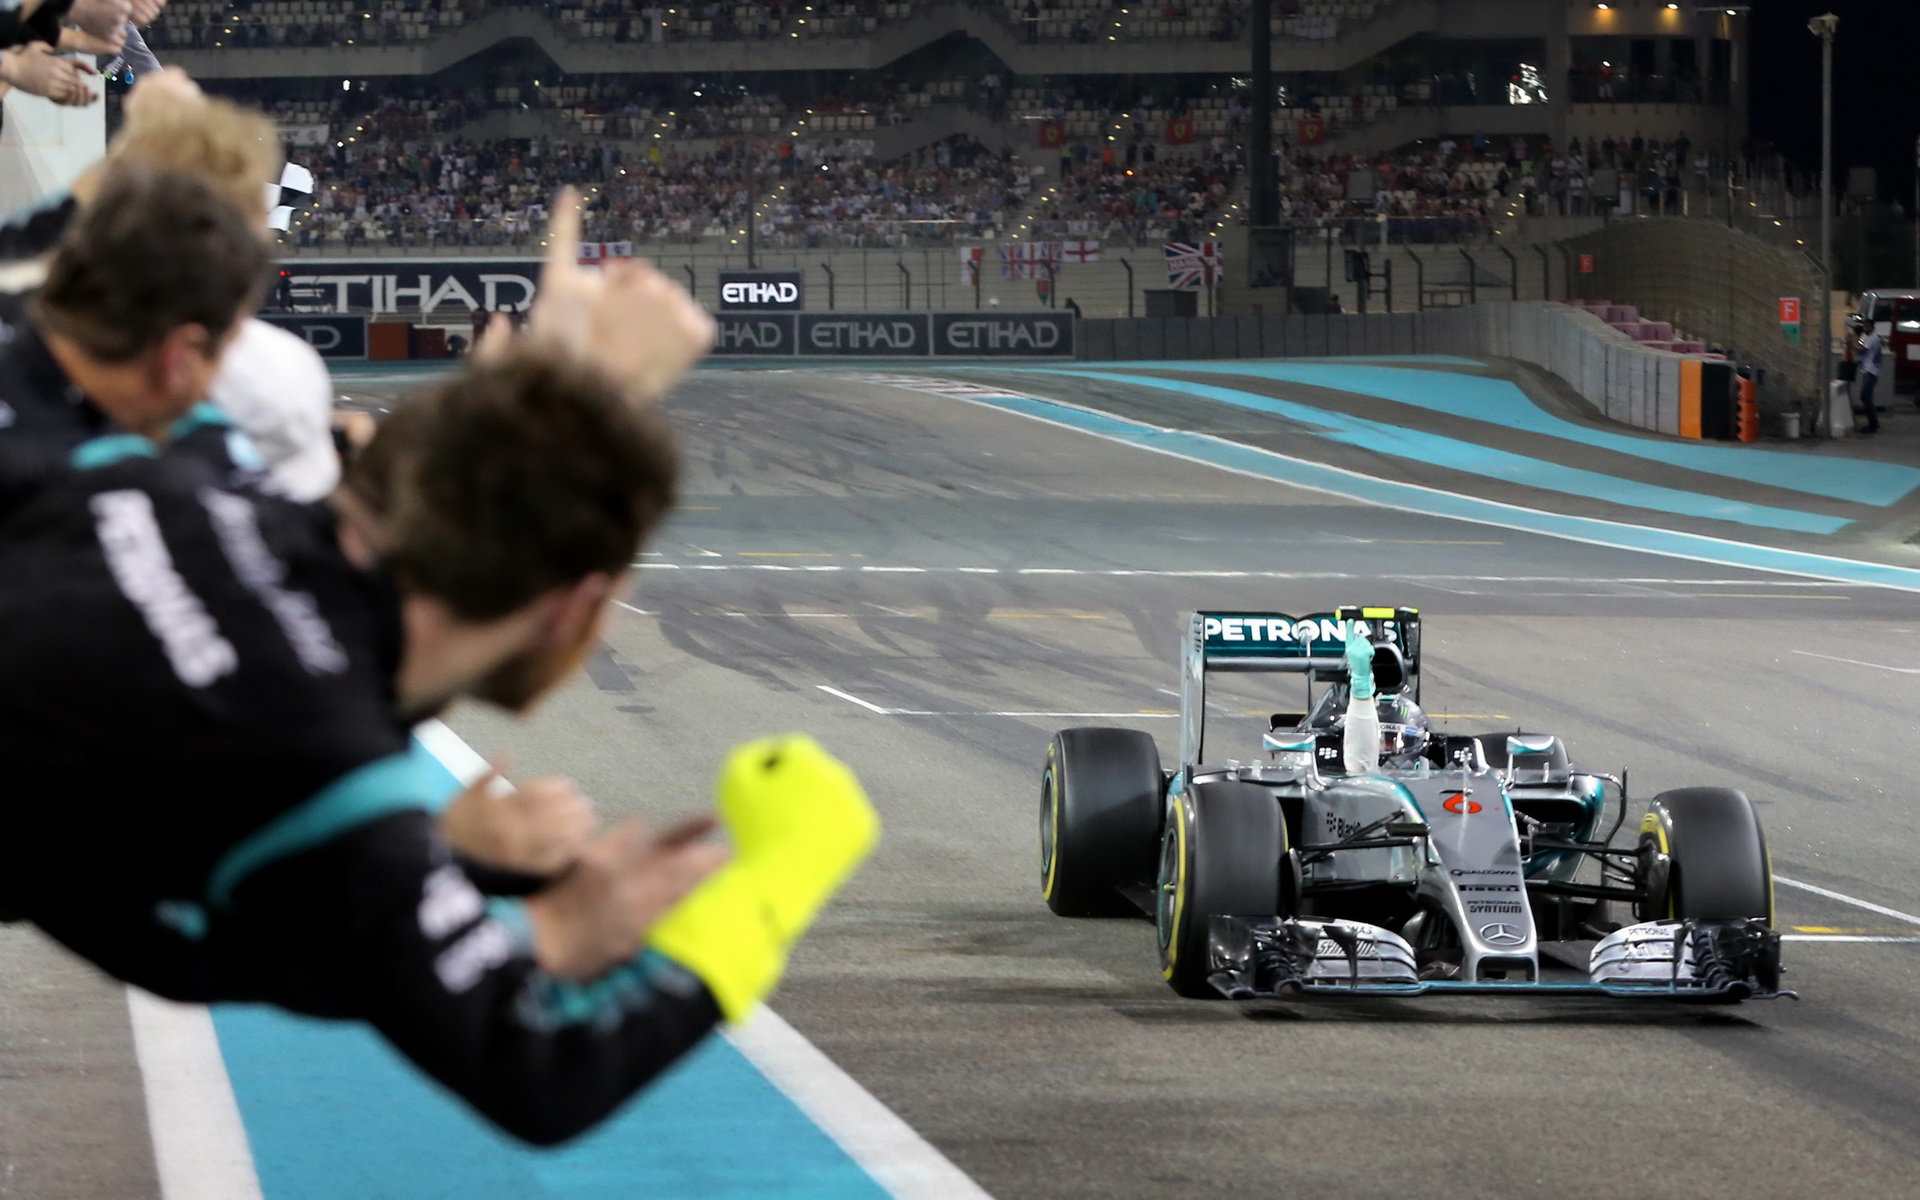 Bude Mercedes v sezóně 2016 pokračovat další hromadou vítězství?